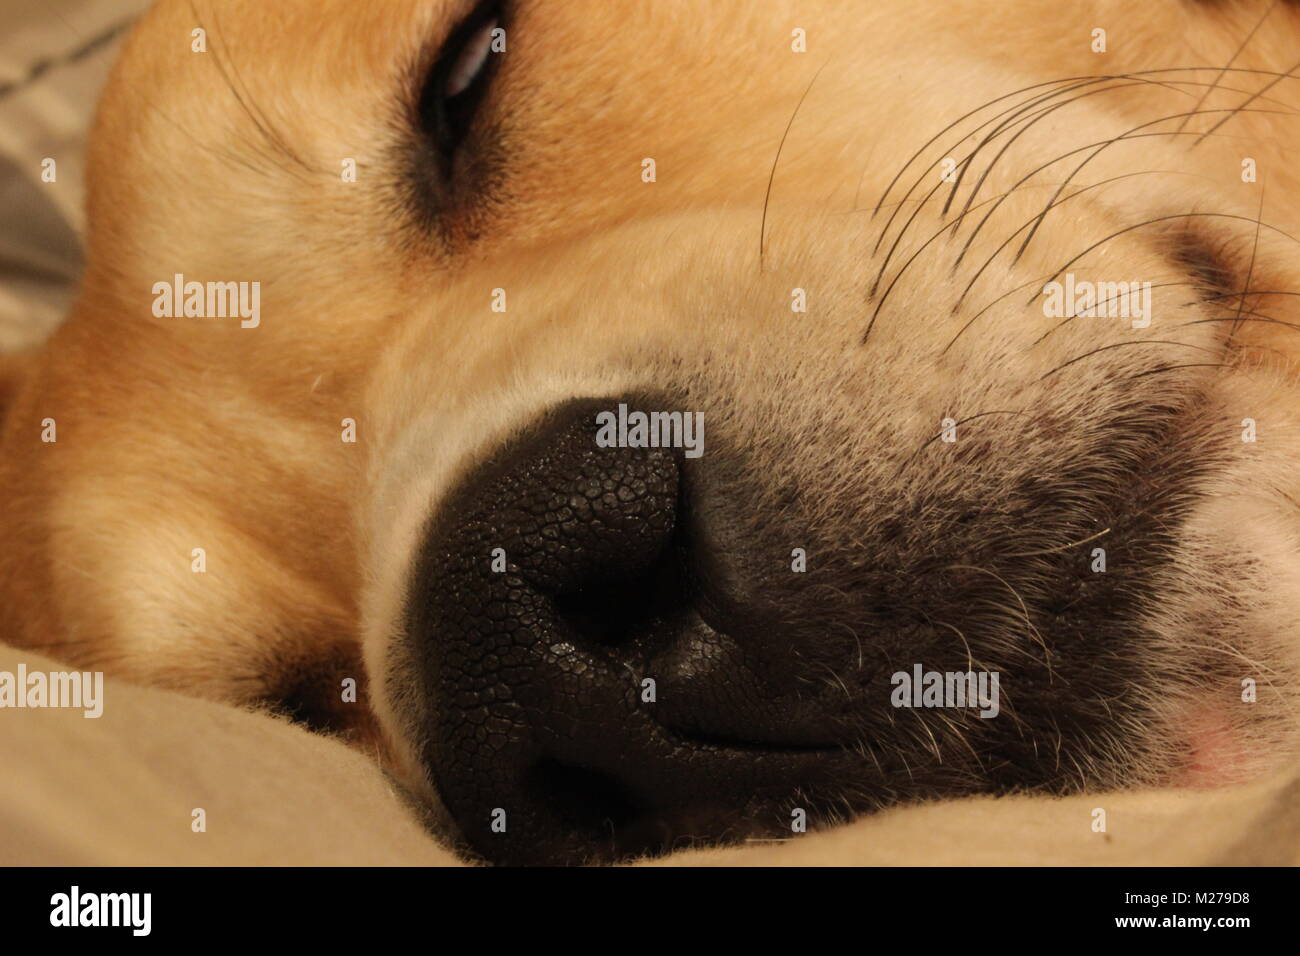 close up shot of sleeping dog Stock Photo